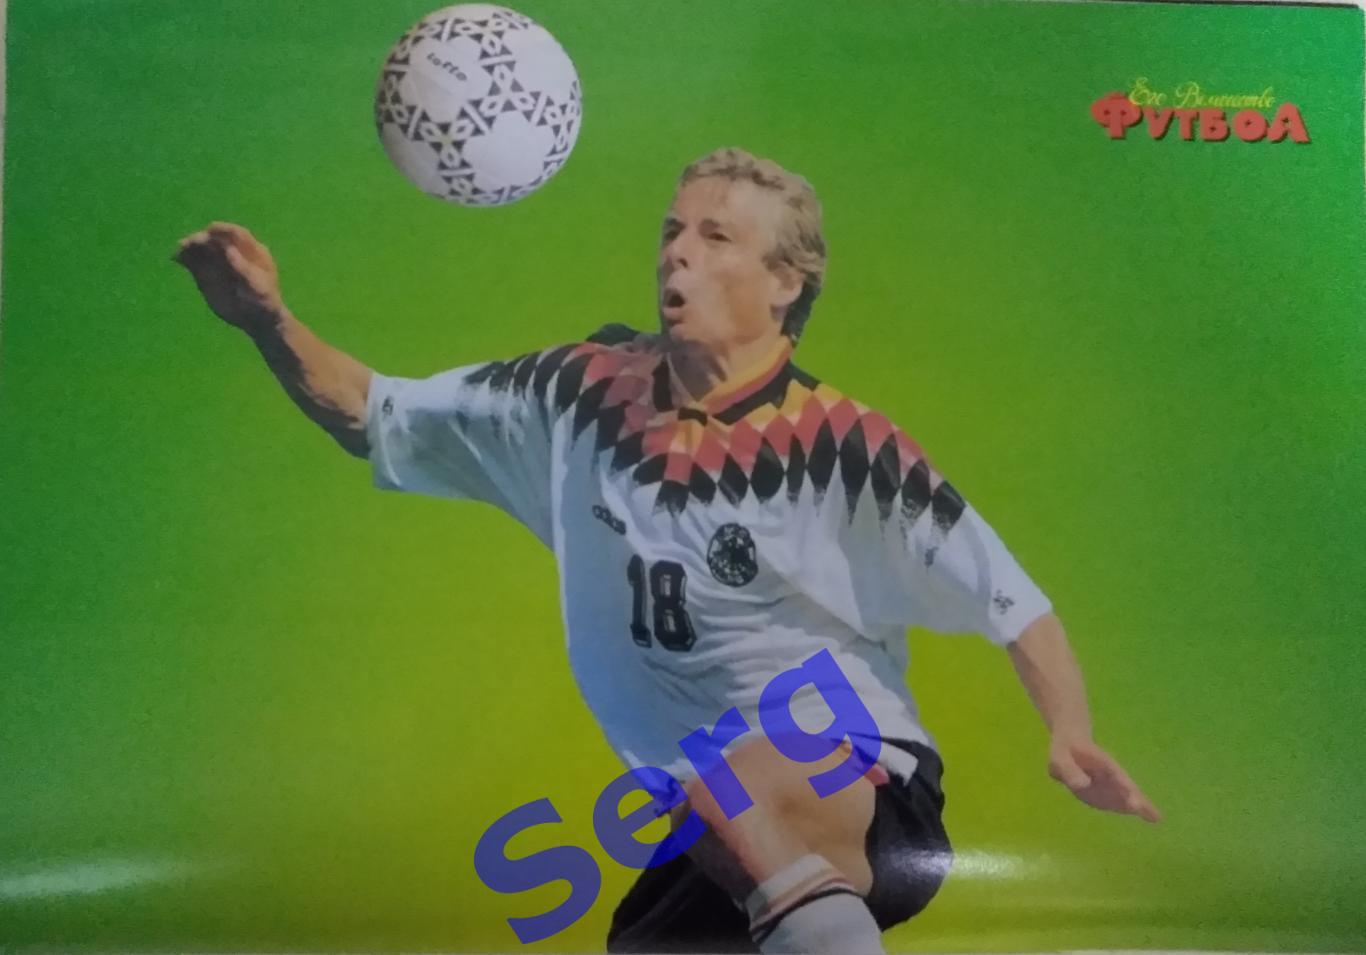 Журнал Его Величество Футбол №1 1996 год 2